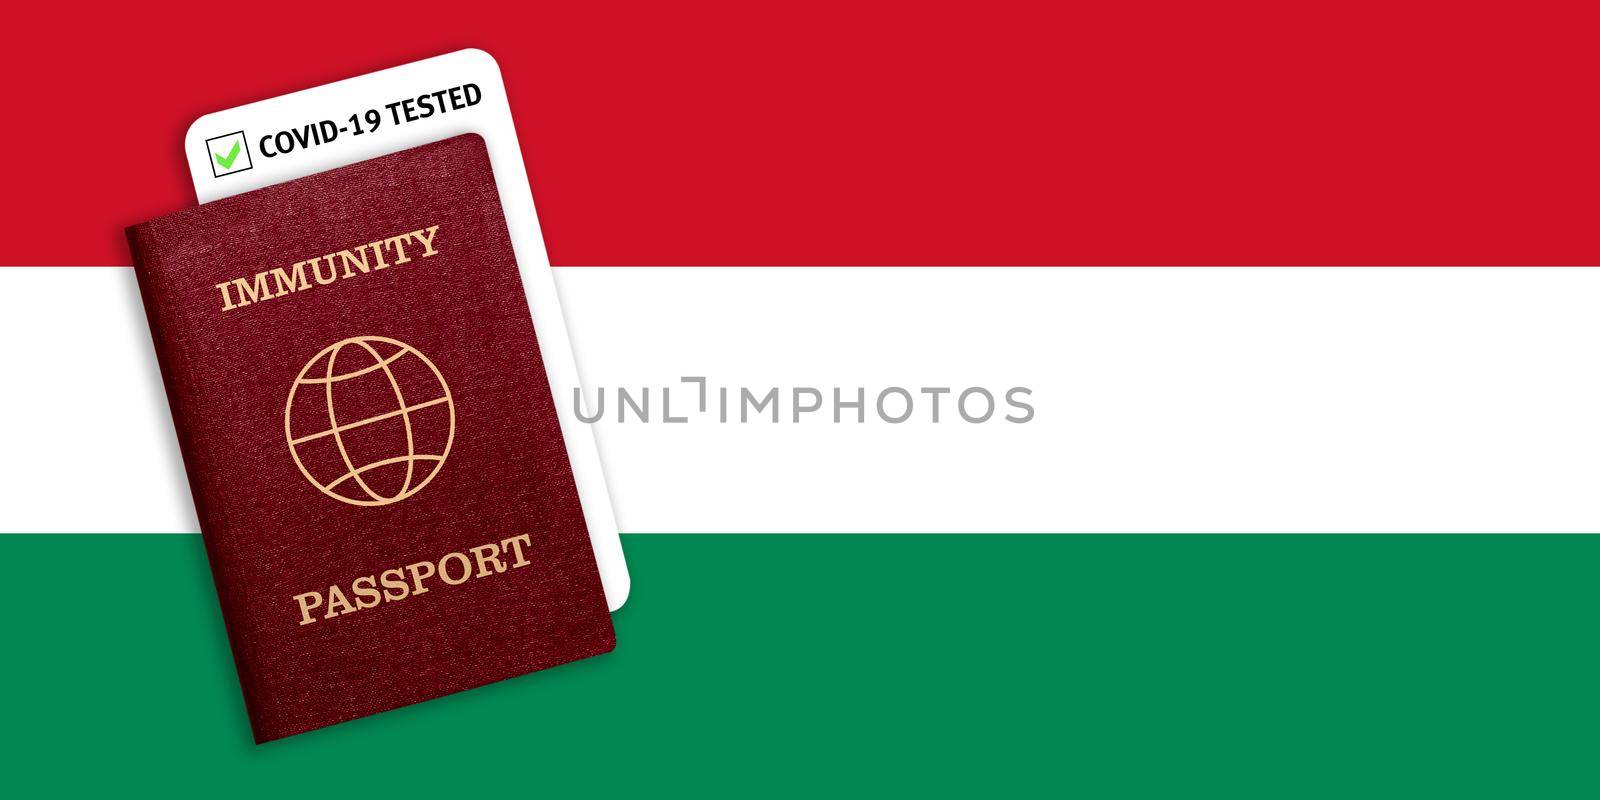 Immunity passport and coronavirus test with flag of Hungary by galinasharapova